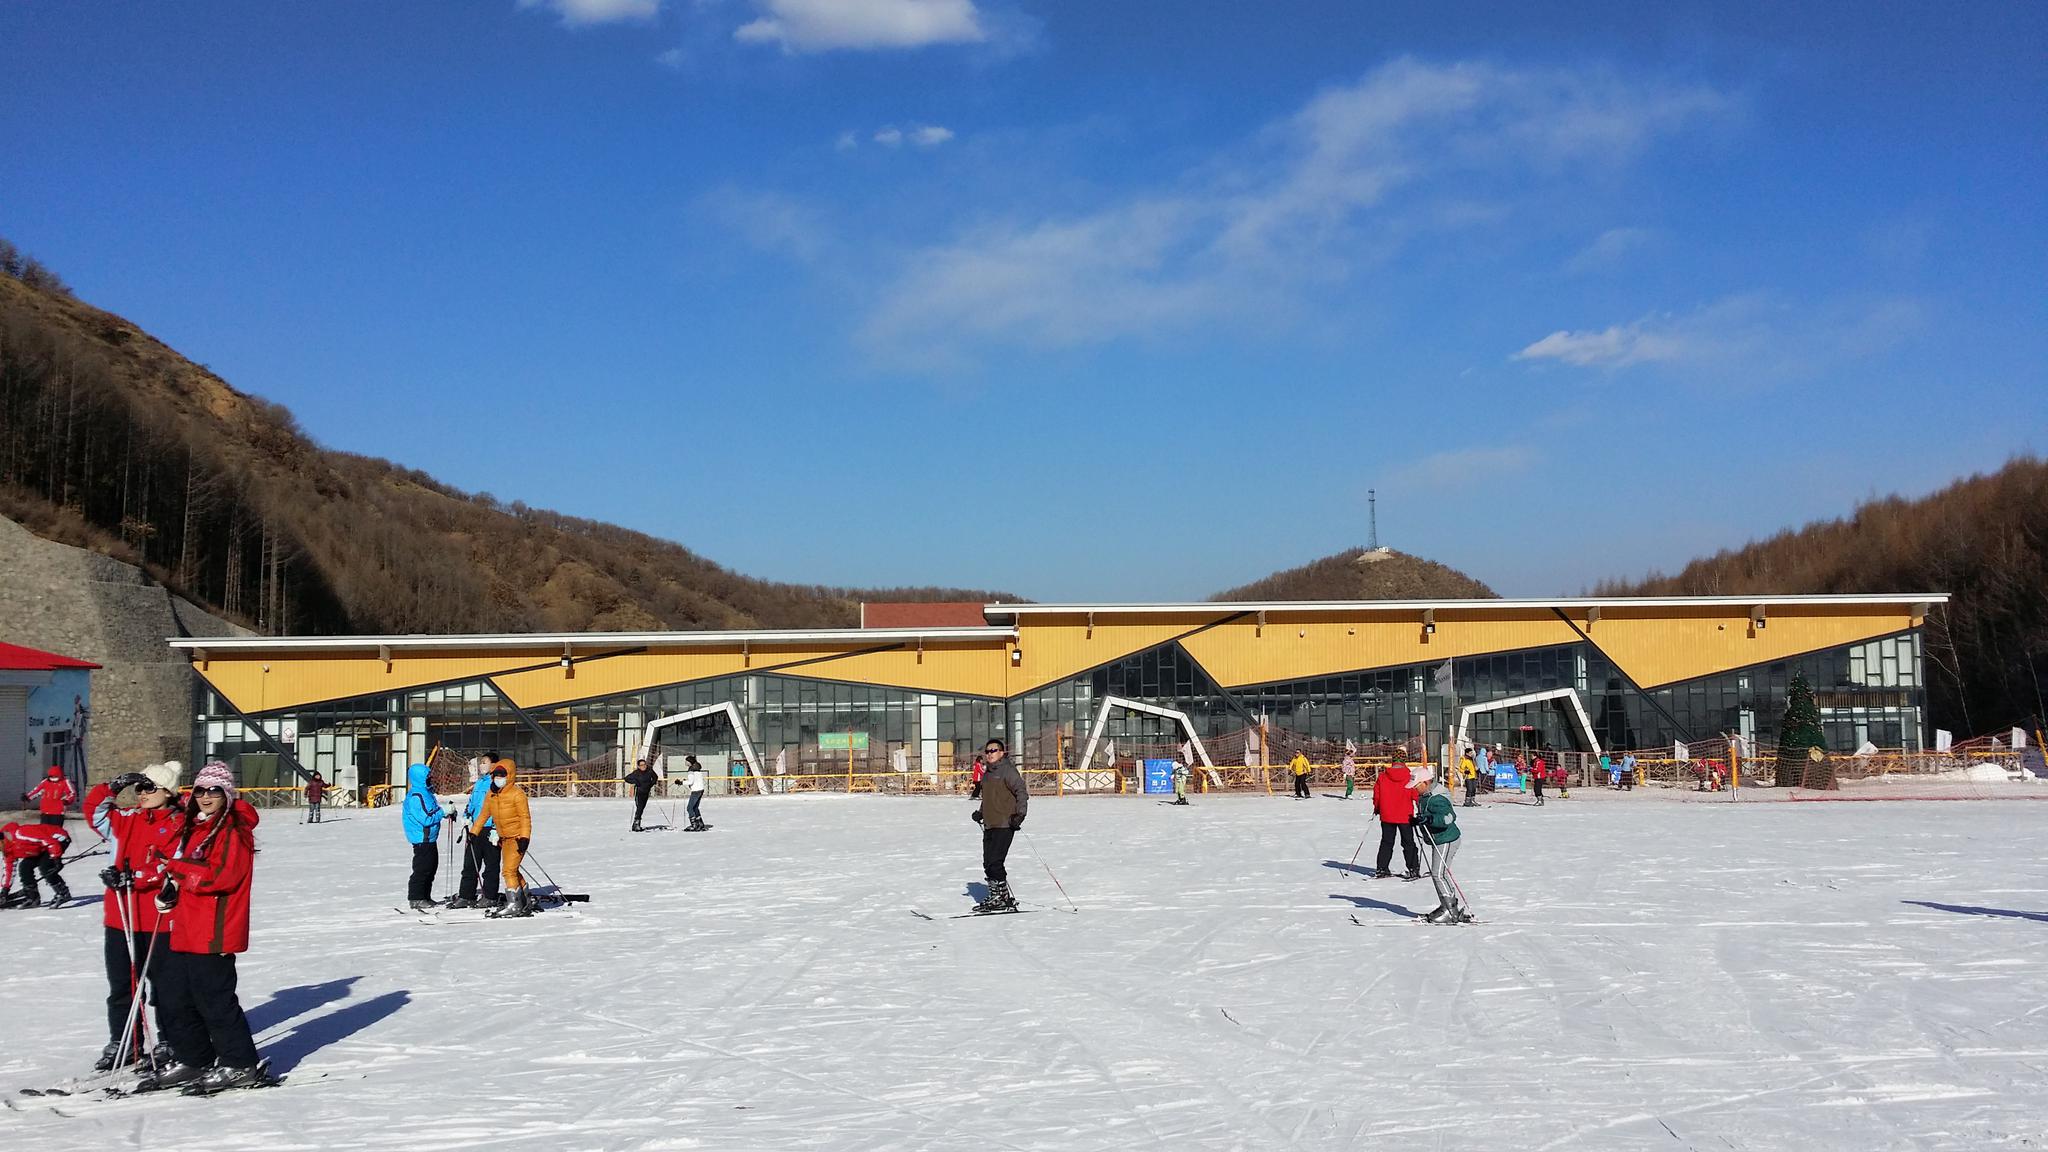 美林谷滑雪场 冬奥会图片